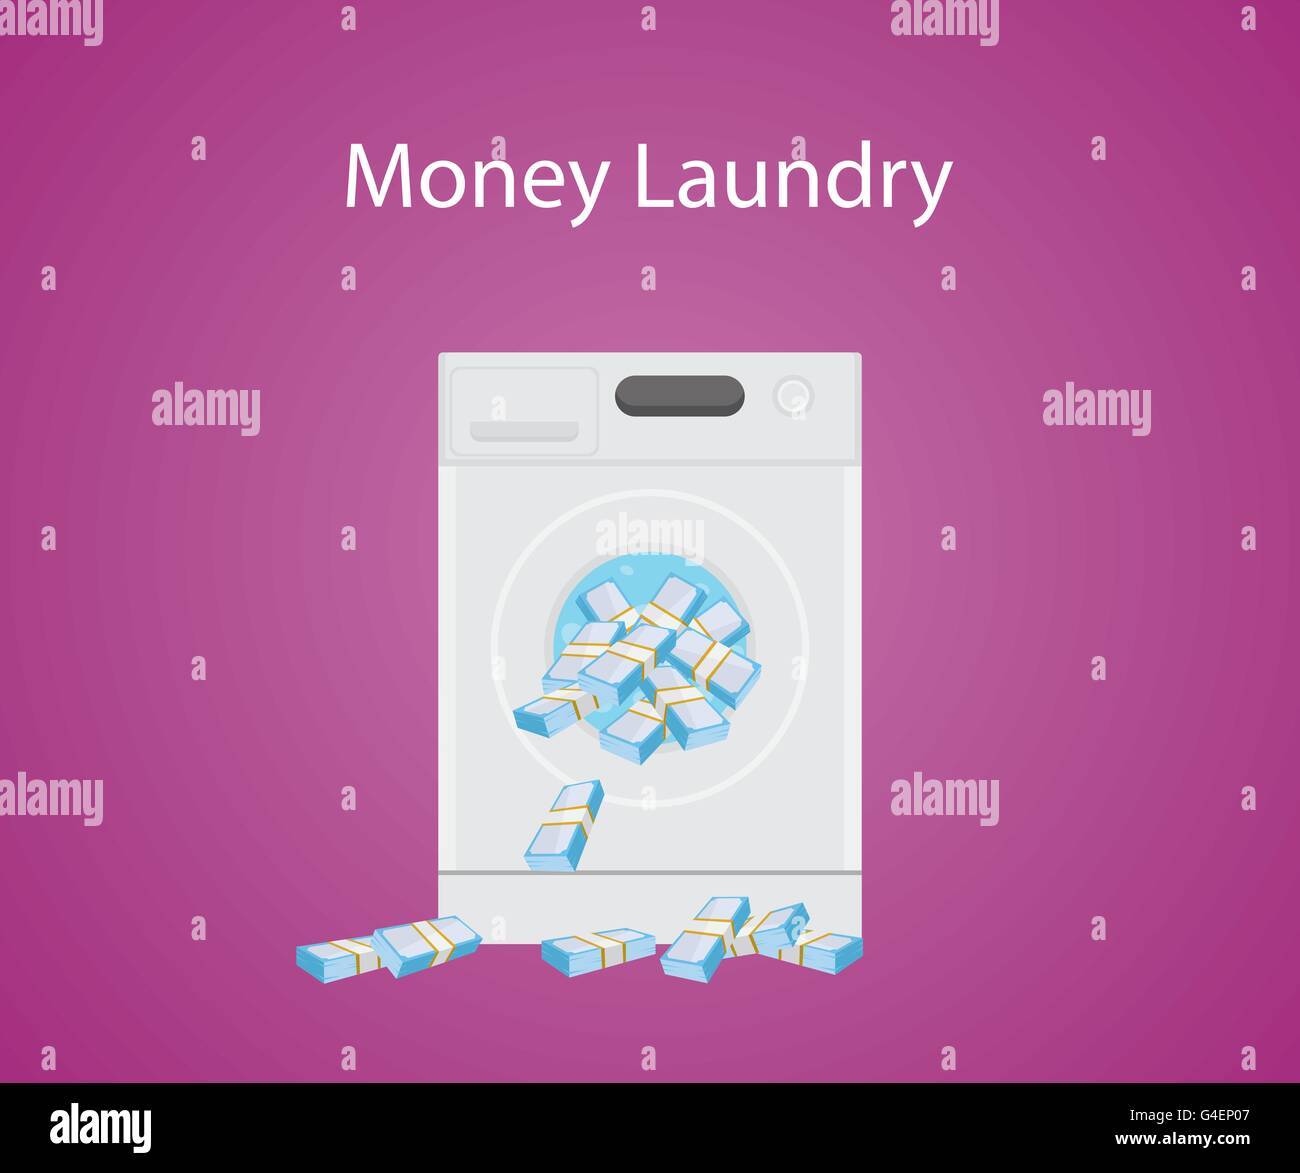 Laundry перевод на русский. Money Laundry.